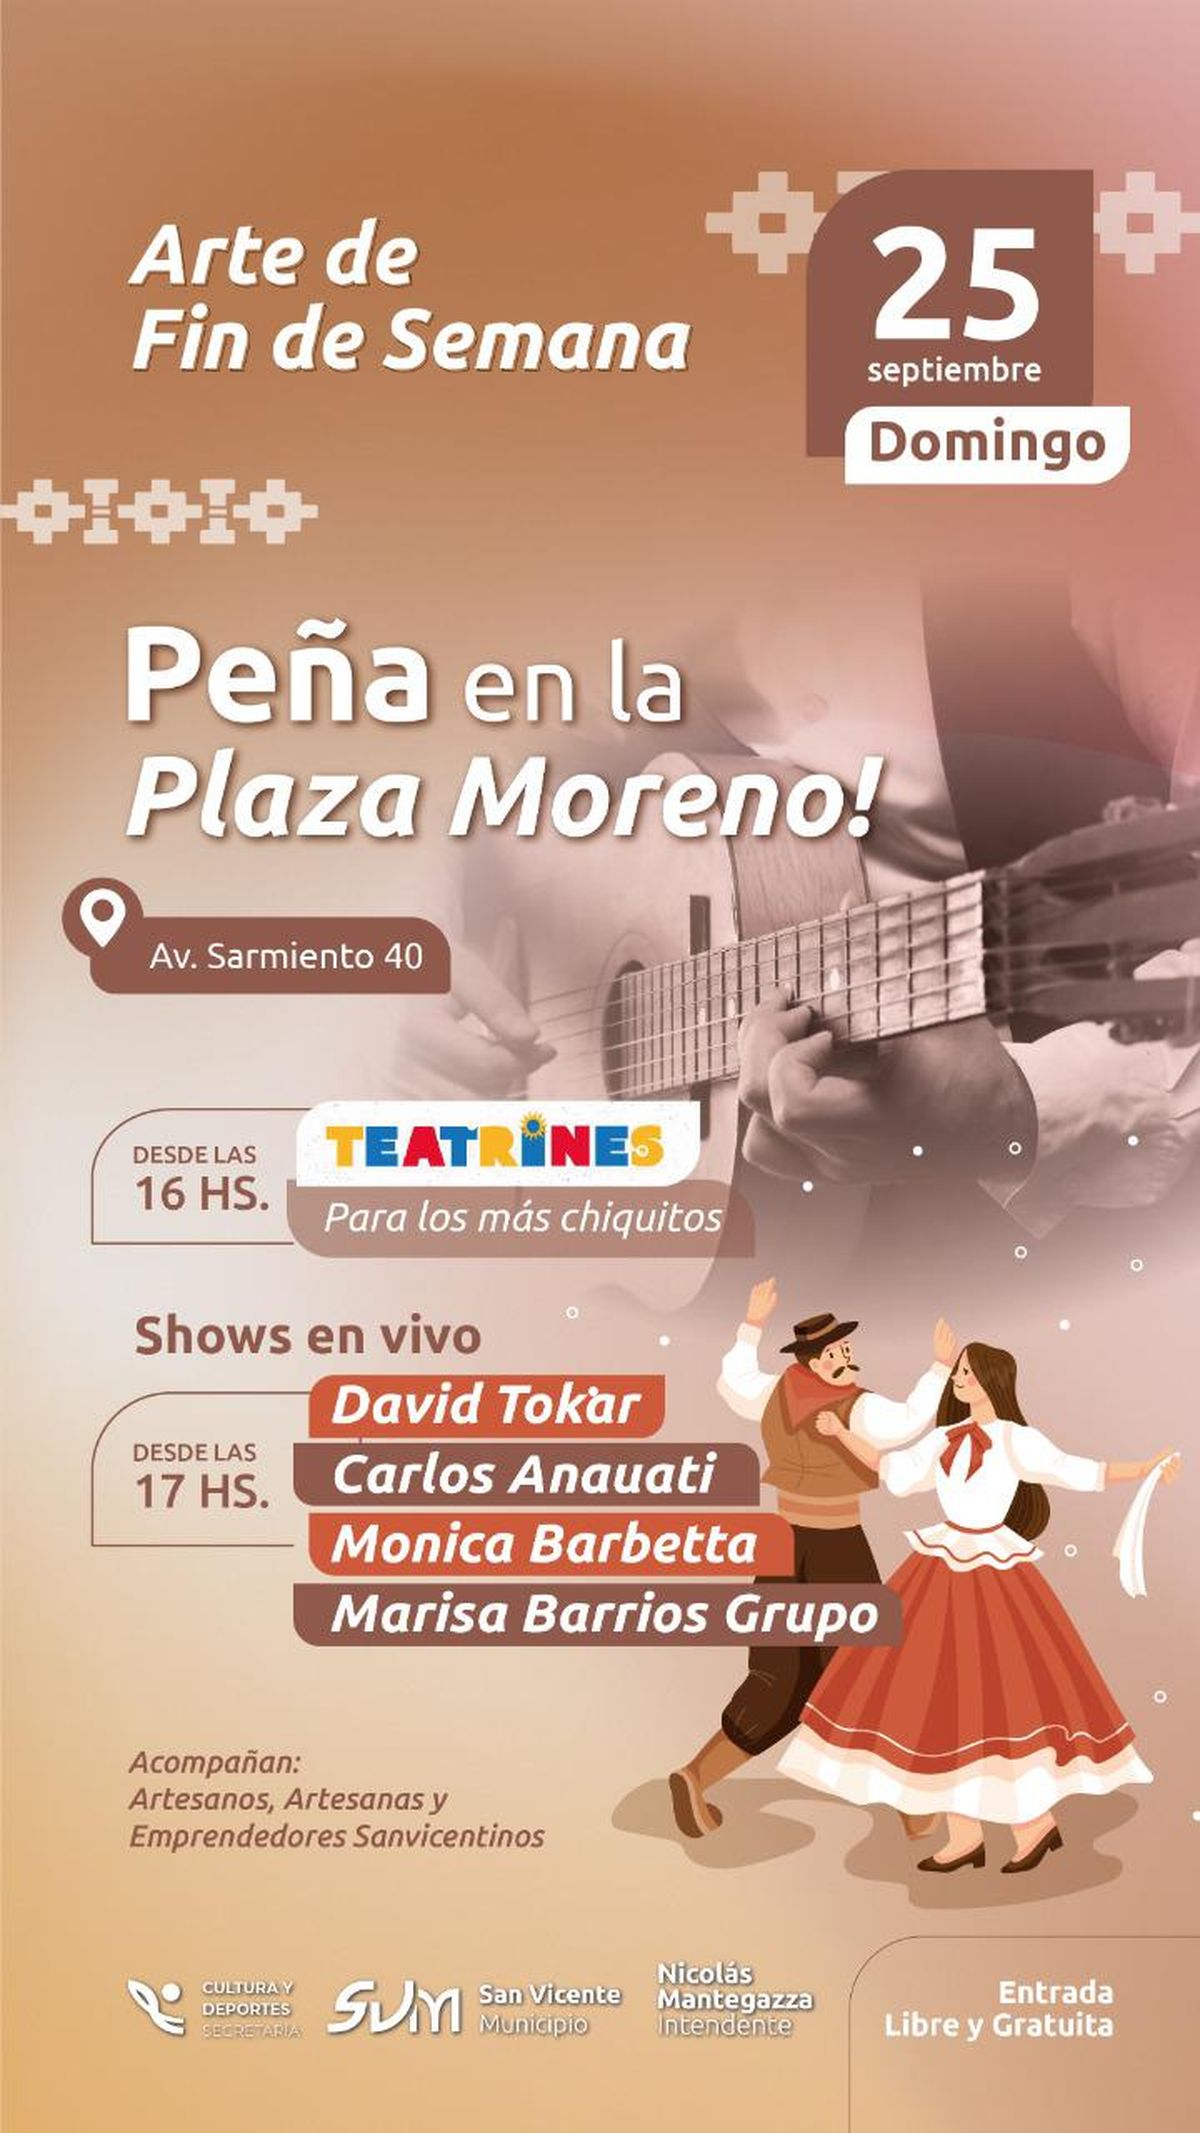 Flyer del evento organizado por la municipalidad de San Vicente.